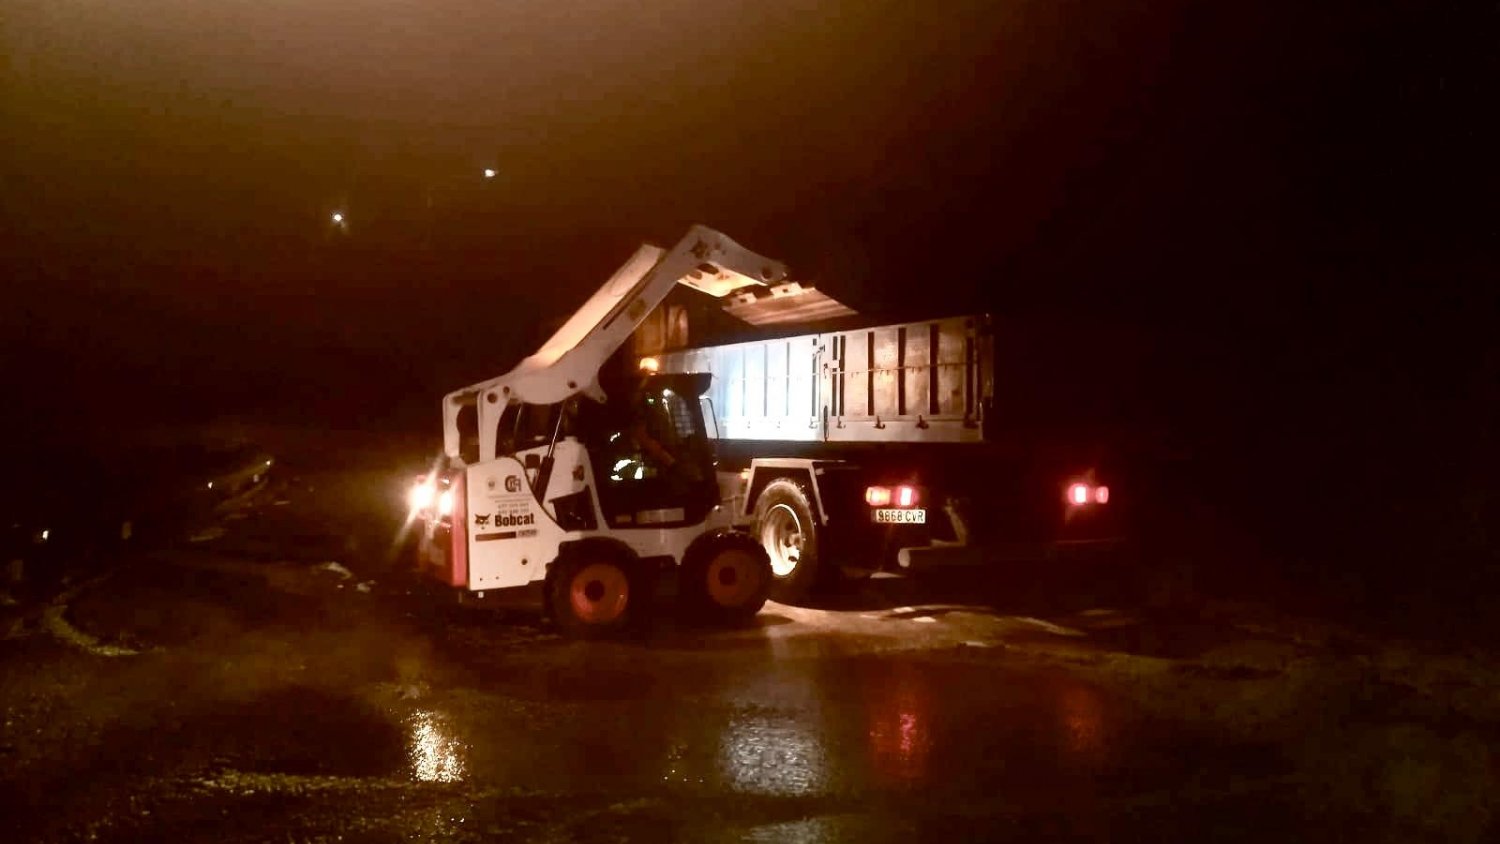 La carretera de Canillas de Aceituno recupera la normalidad tras la fuerte granizada de ayer por la noche